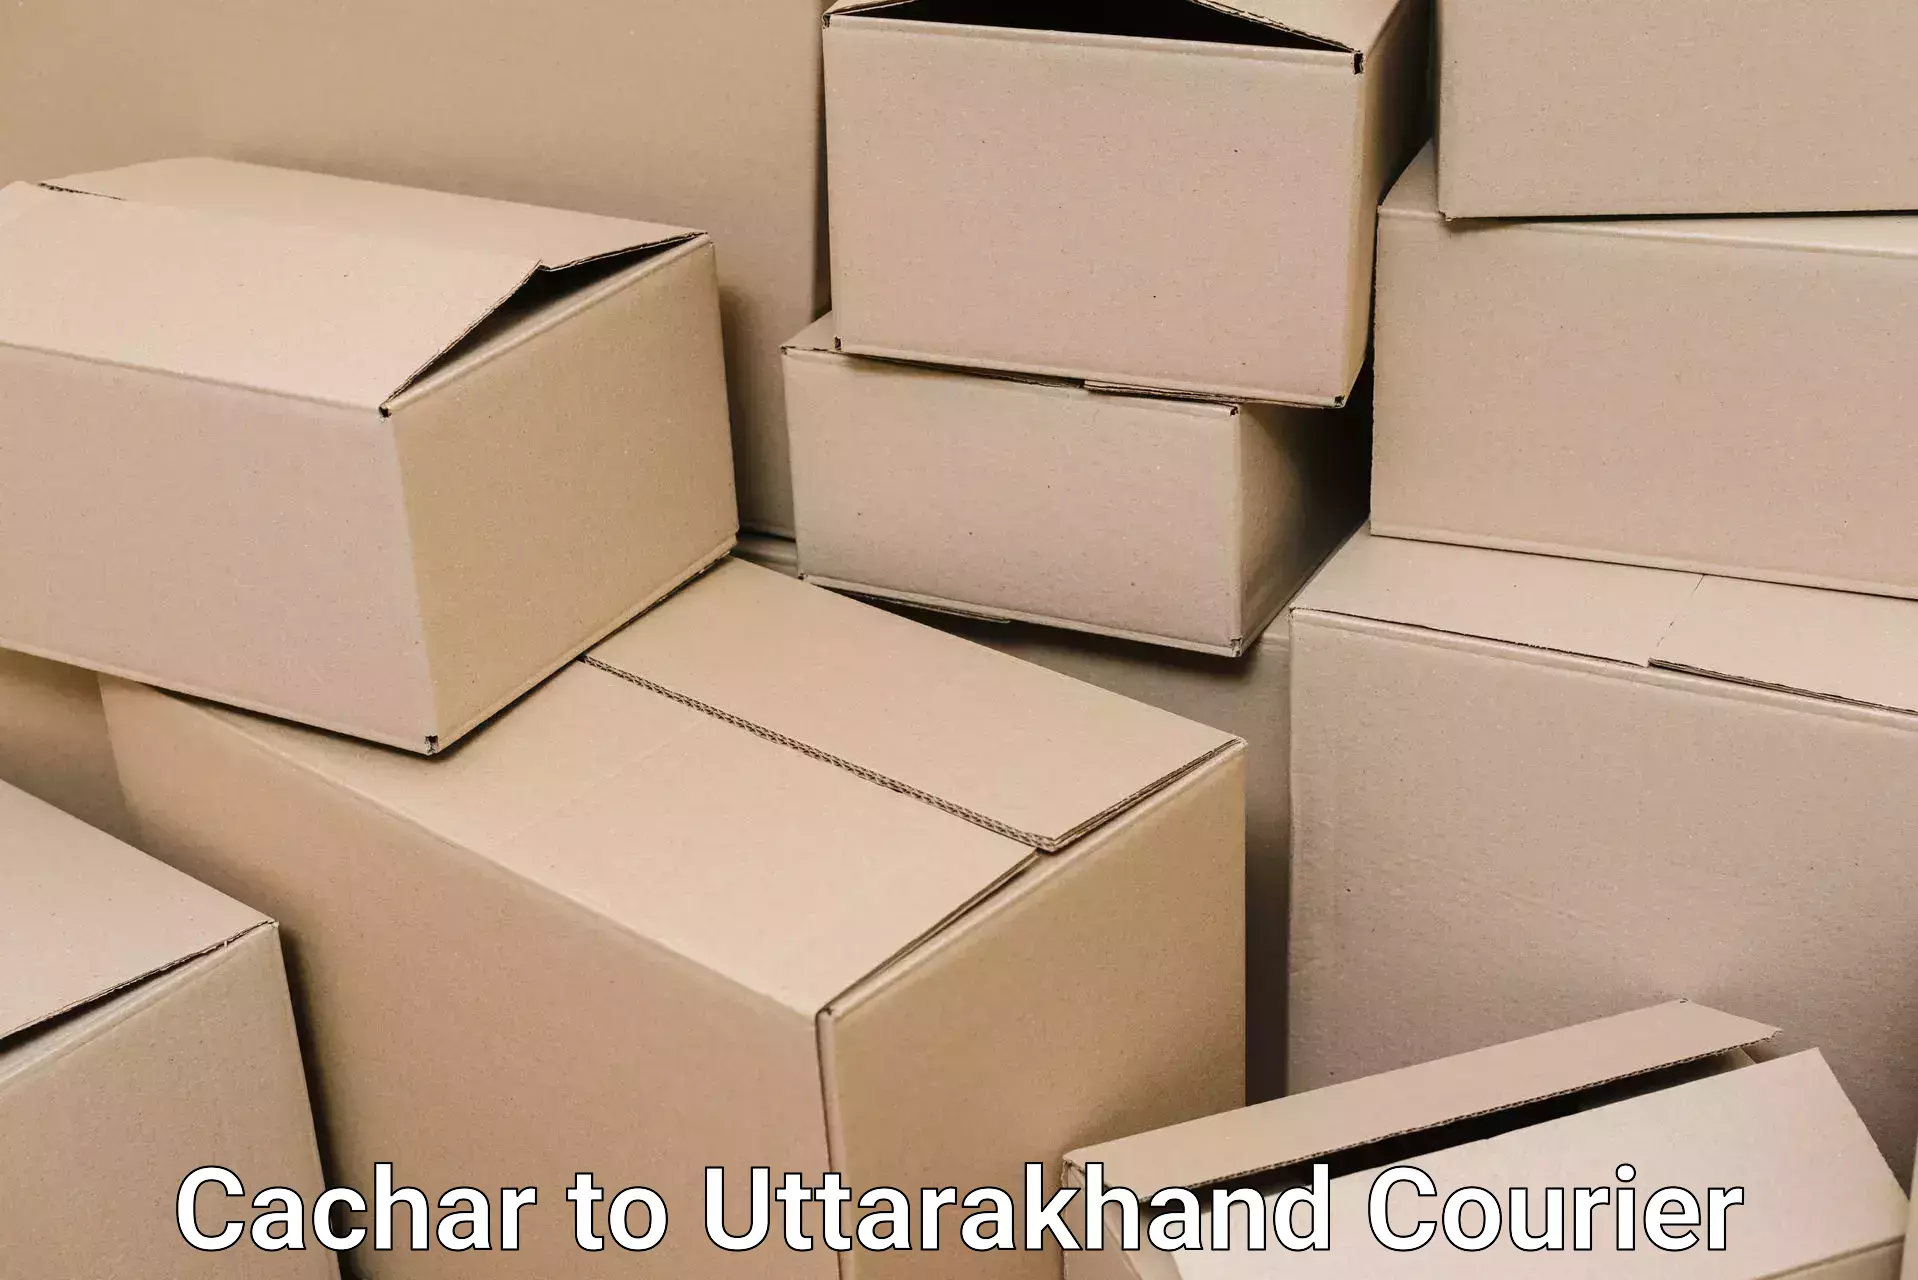 Household transport services Cachar to Uttarakhand